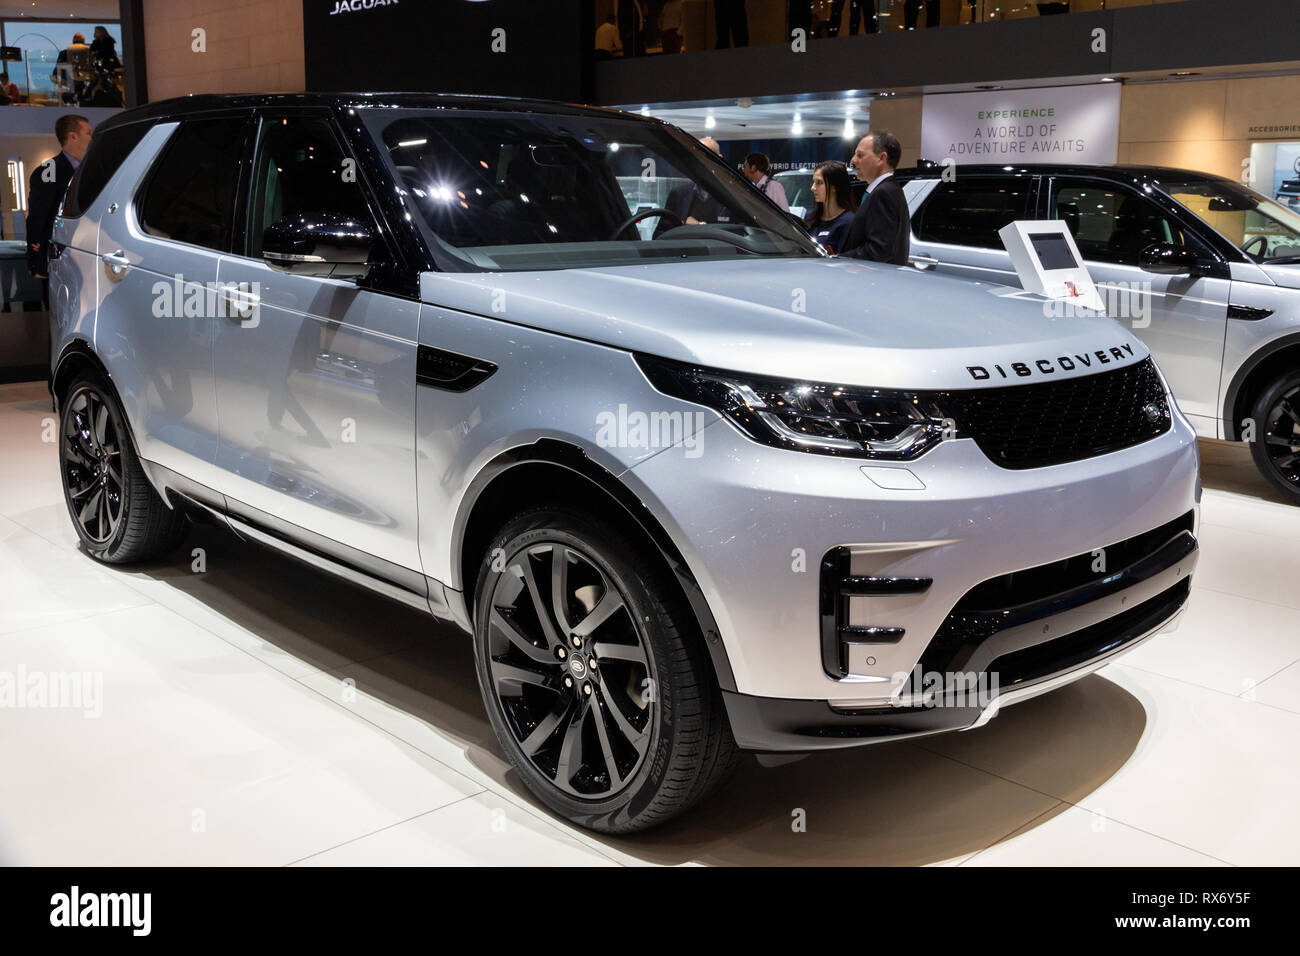 Genf, Schweiz - 6. MÄRZ 2018: Land Rover Discovery Auto auf dem 88. Internationalen Automobilsalon in Genf präsentiert. Stockfoto